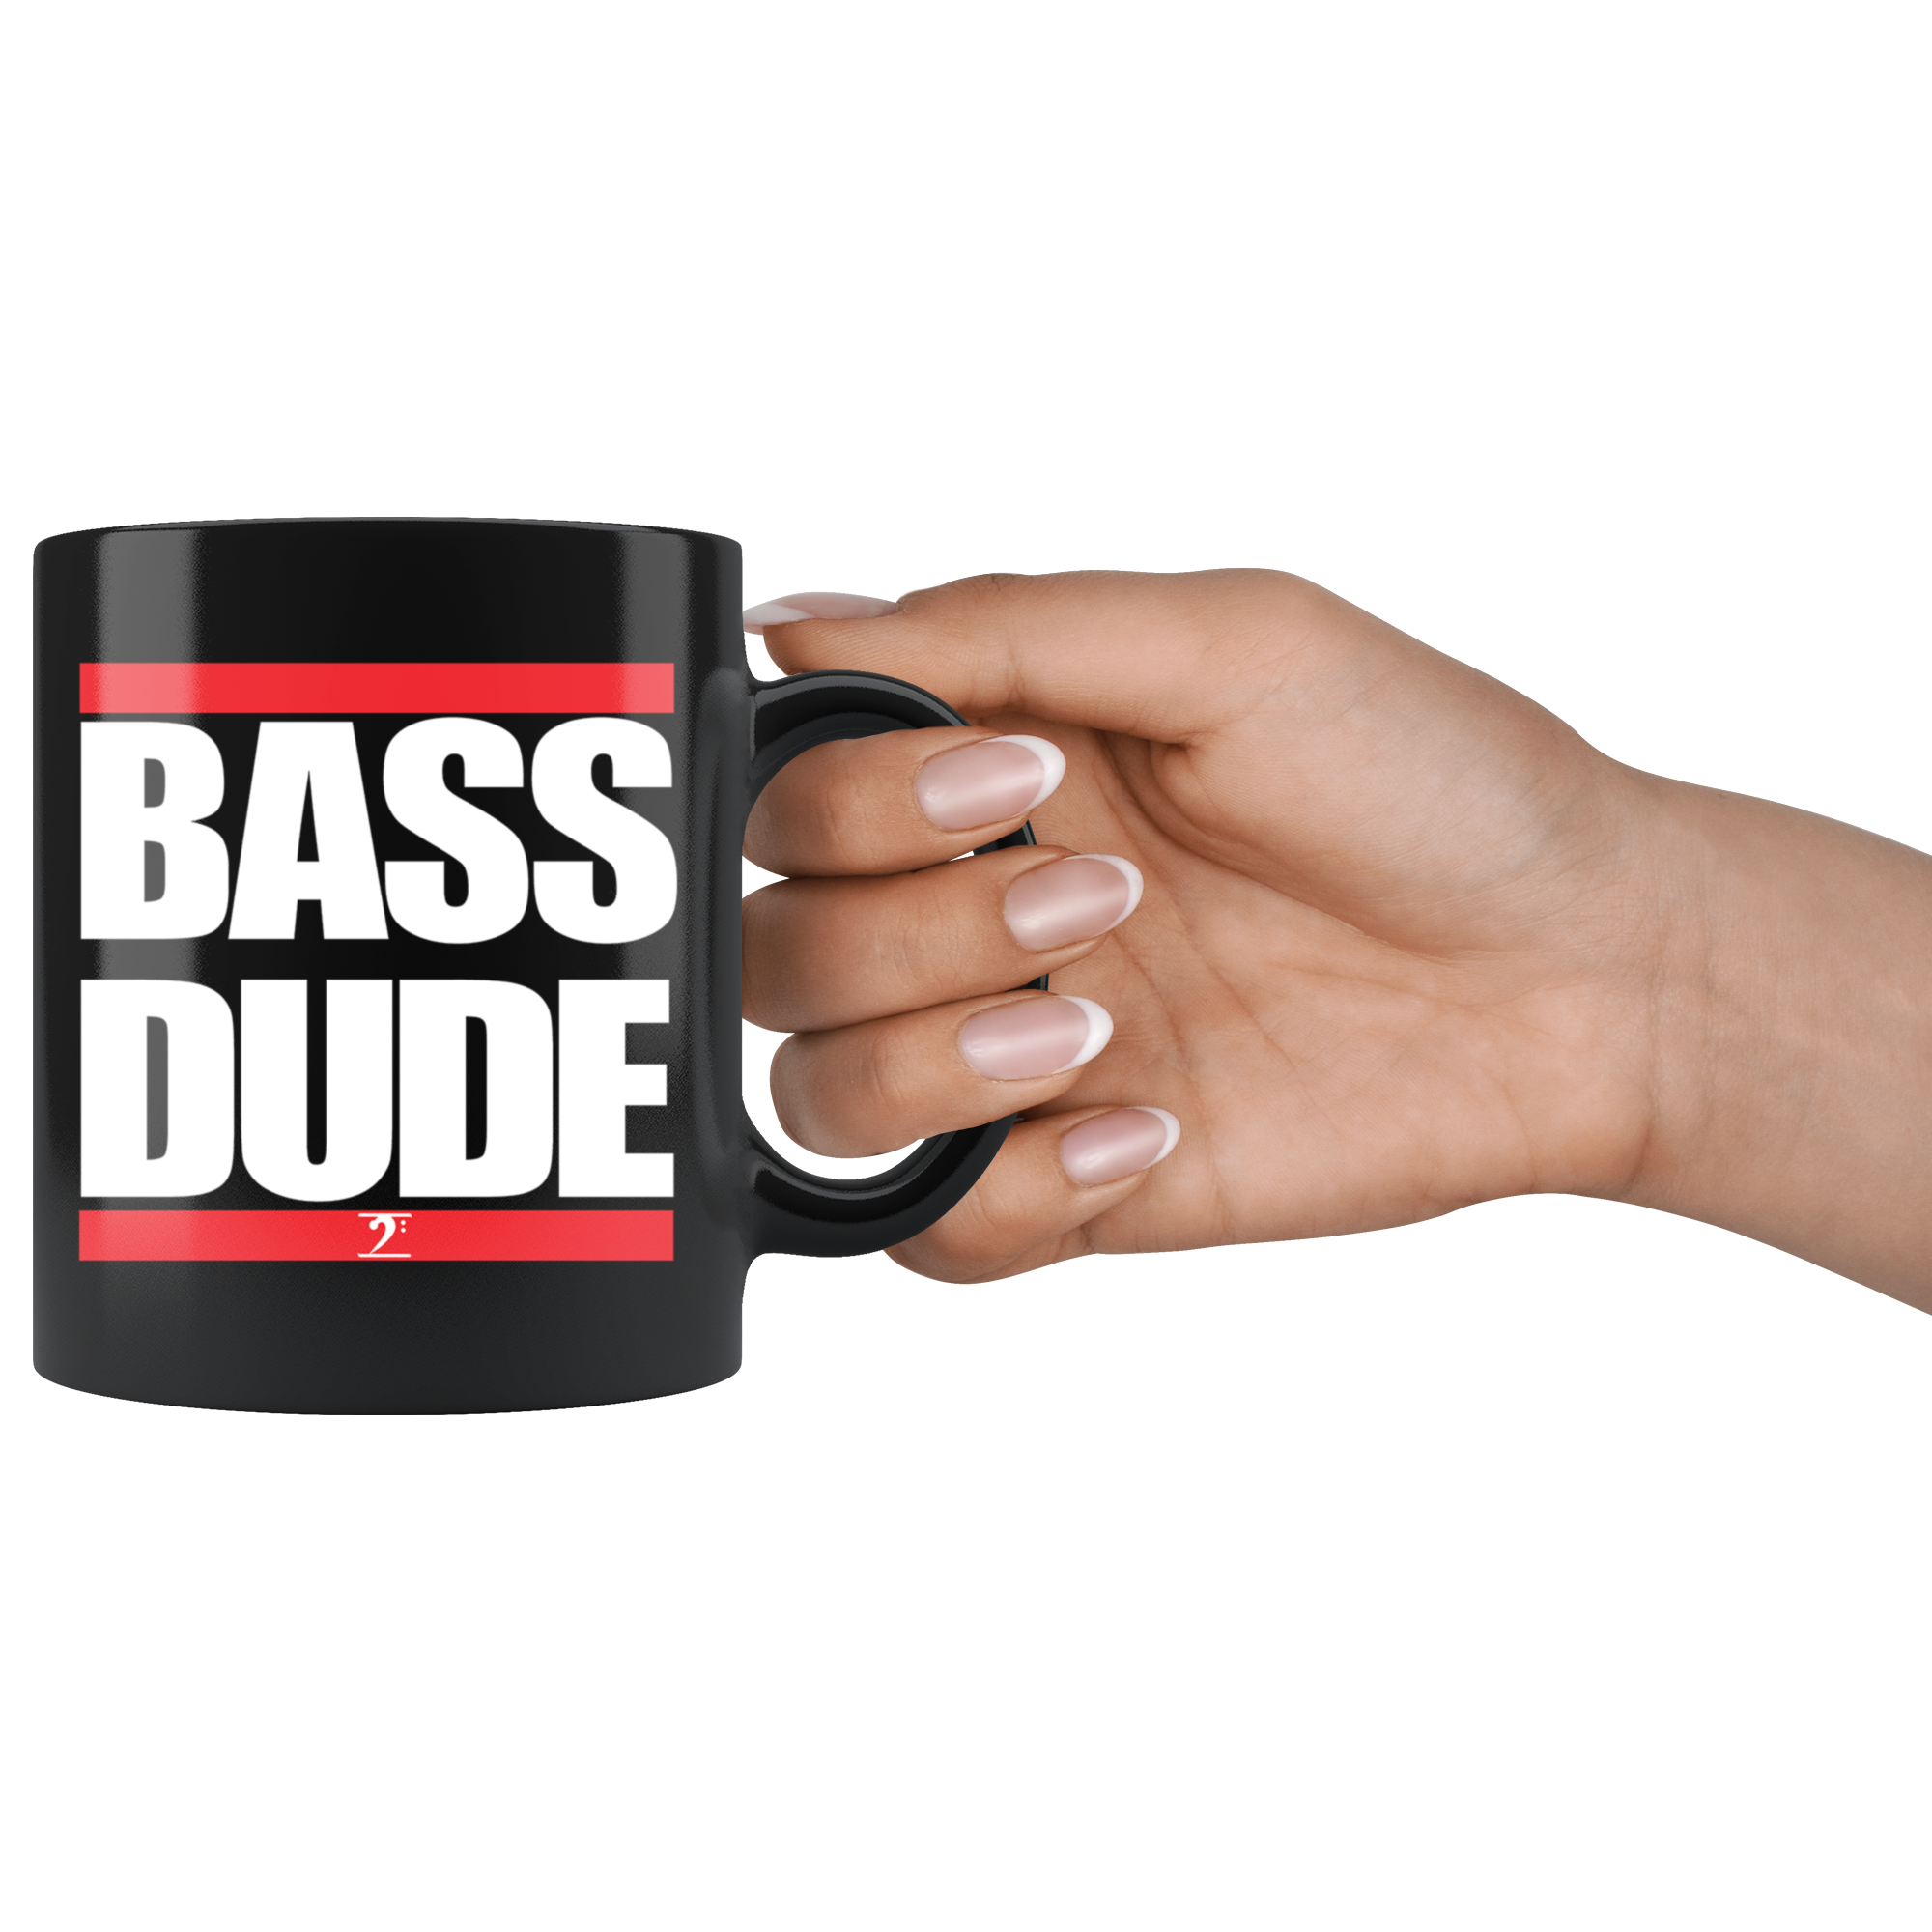 BASS DUDE Mug - Lathon Bass Wear